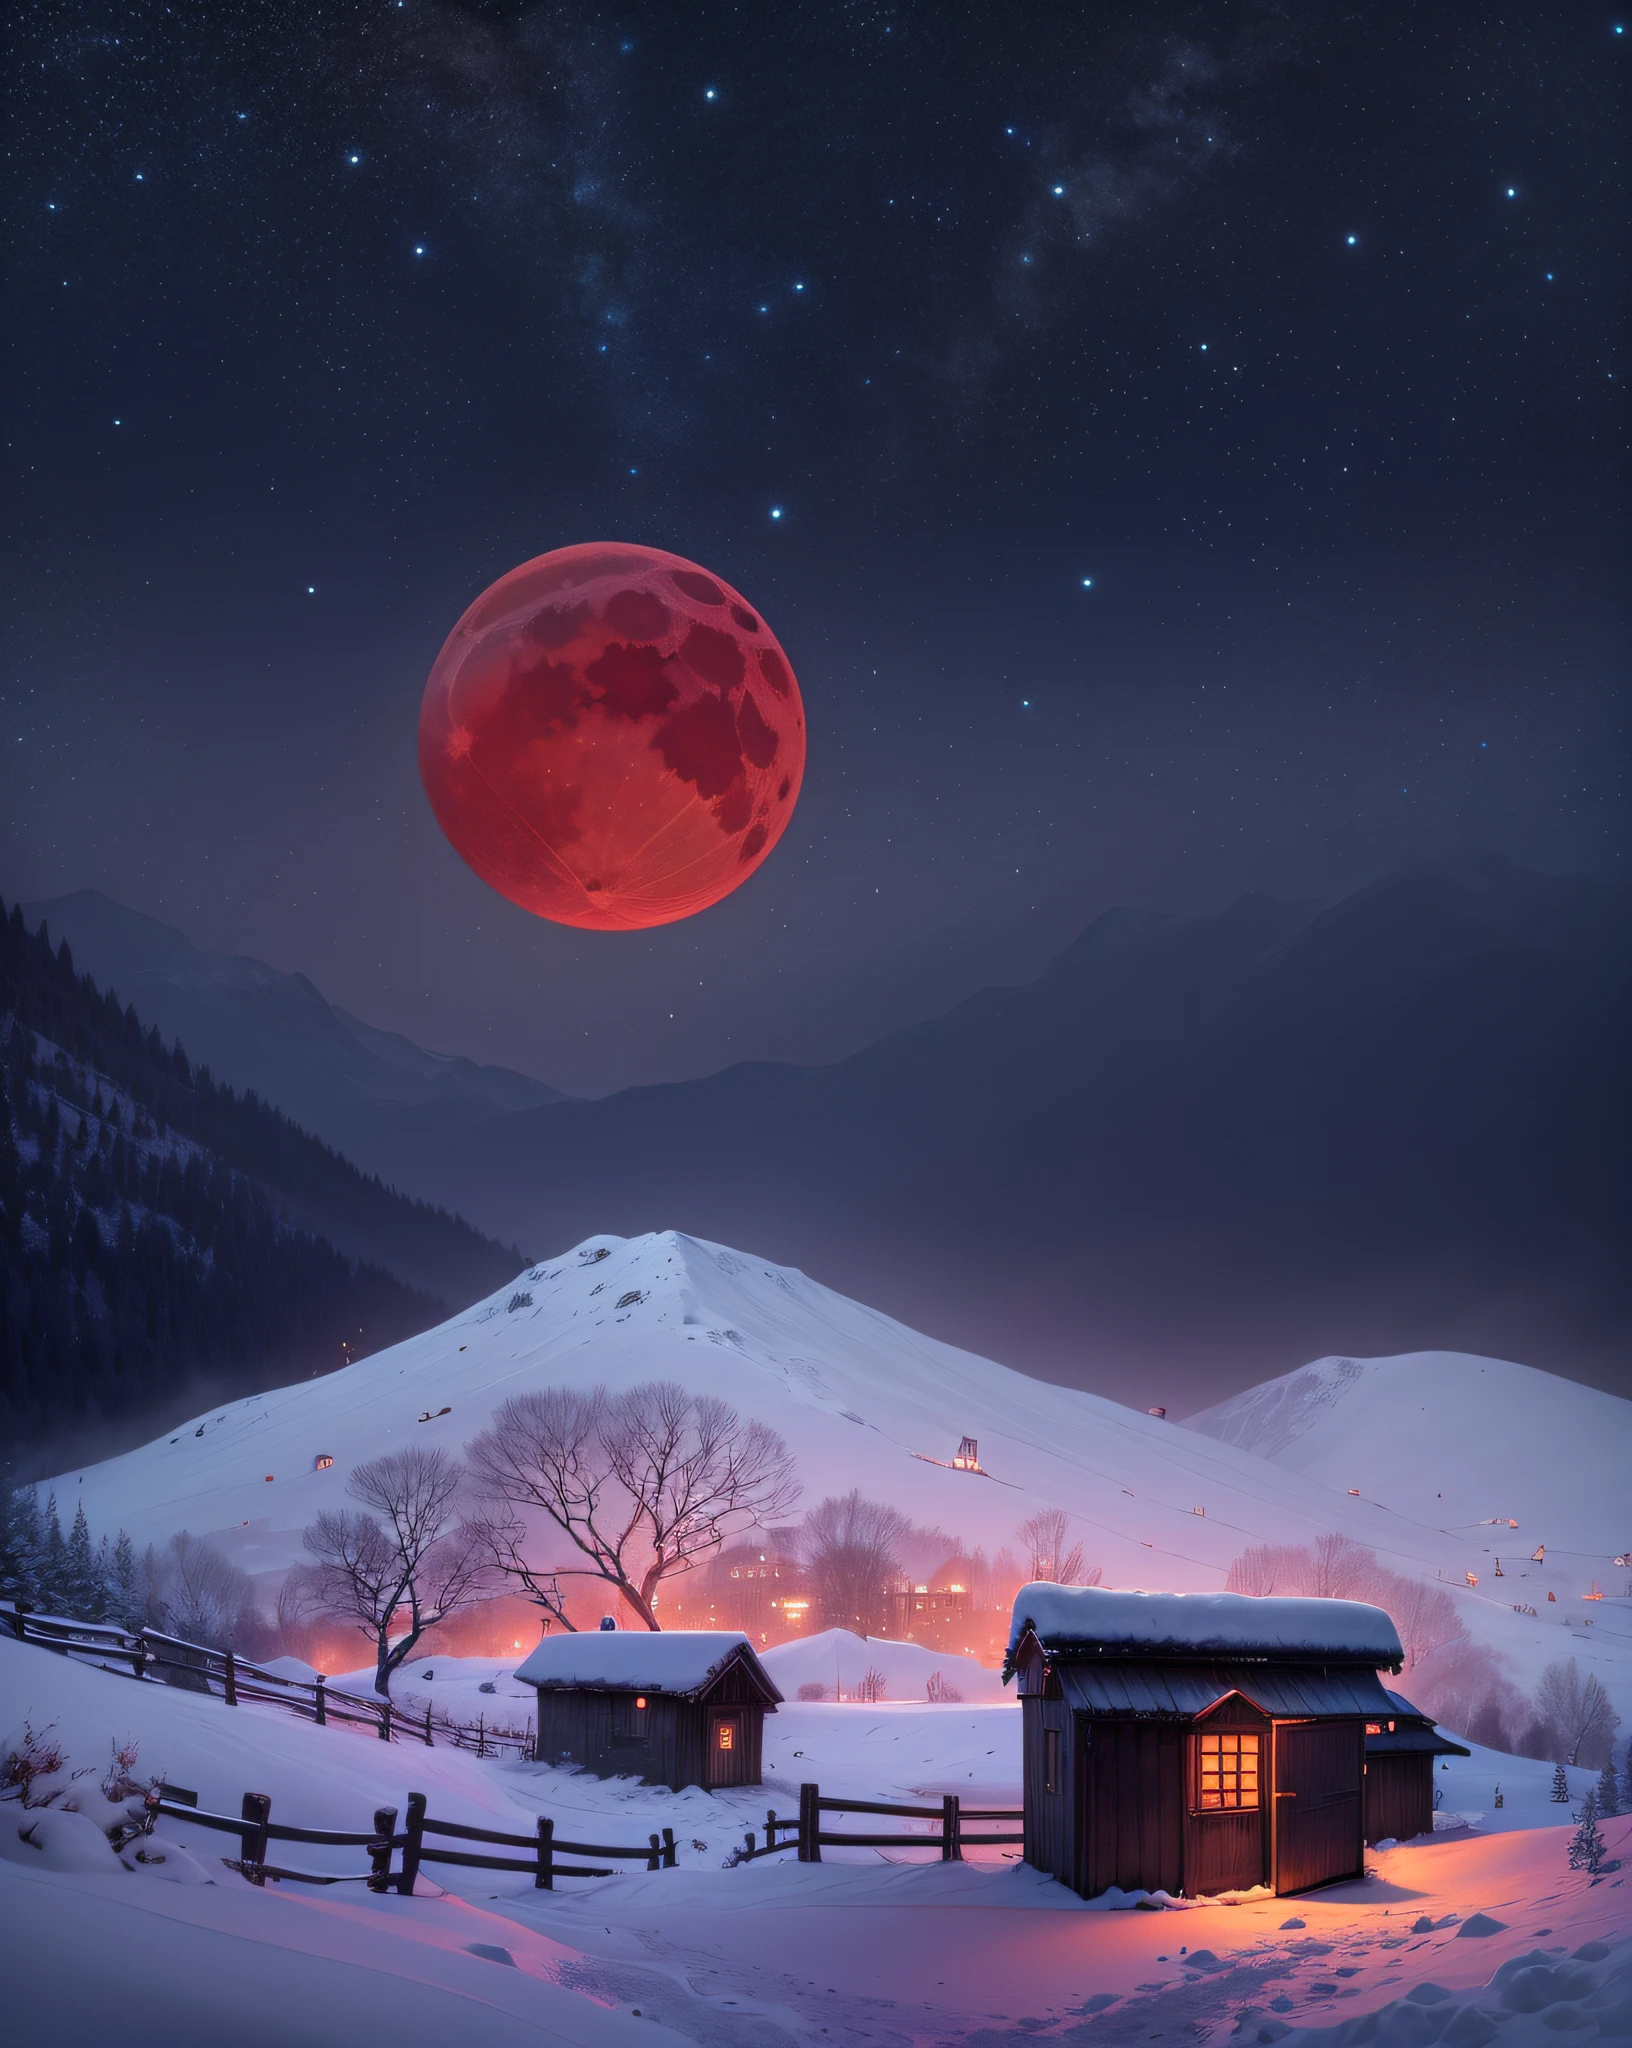 темная ночь、Красная луна、Снежный пейзаж、снежные горы、Небольшой сарай、Свет просачивается через окно сарая